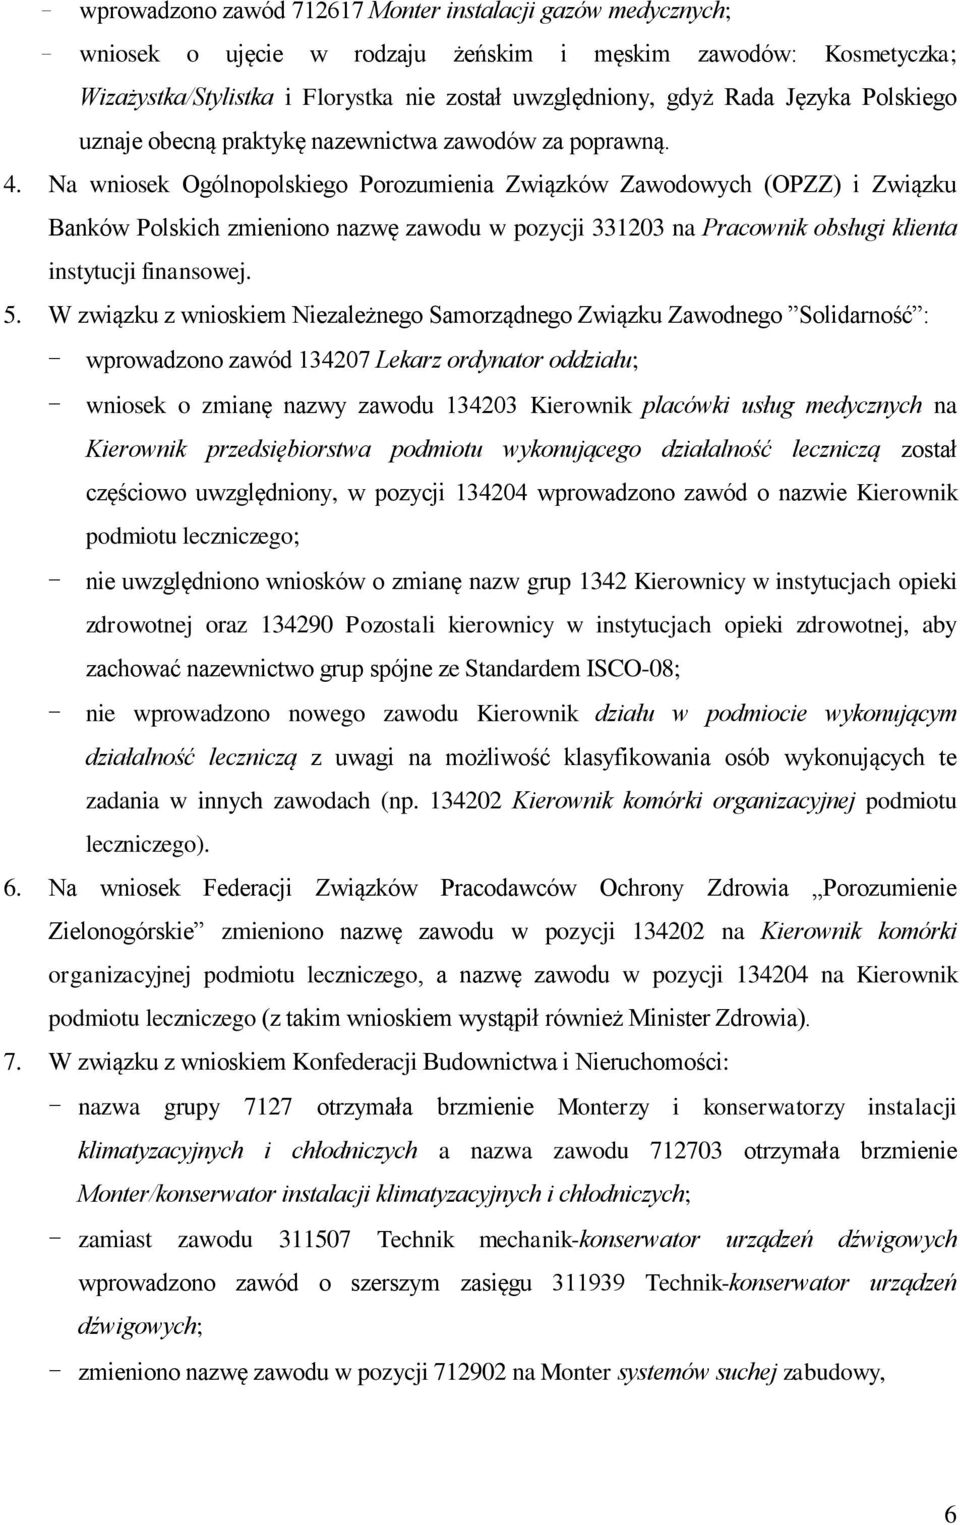 Na wniosek Ogólnopolskiego Porozumienia Związków Zawodowych (OPZZ) i Związku Banków Polskich zmieniono nazwę zawodu w pozycji 331203 na Pracownik obsługi klienta instytucji finansowej. 5.